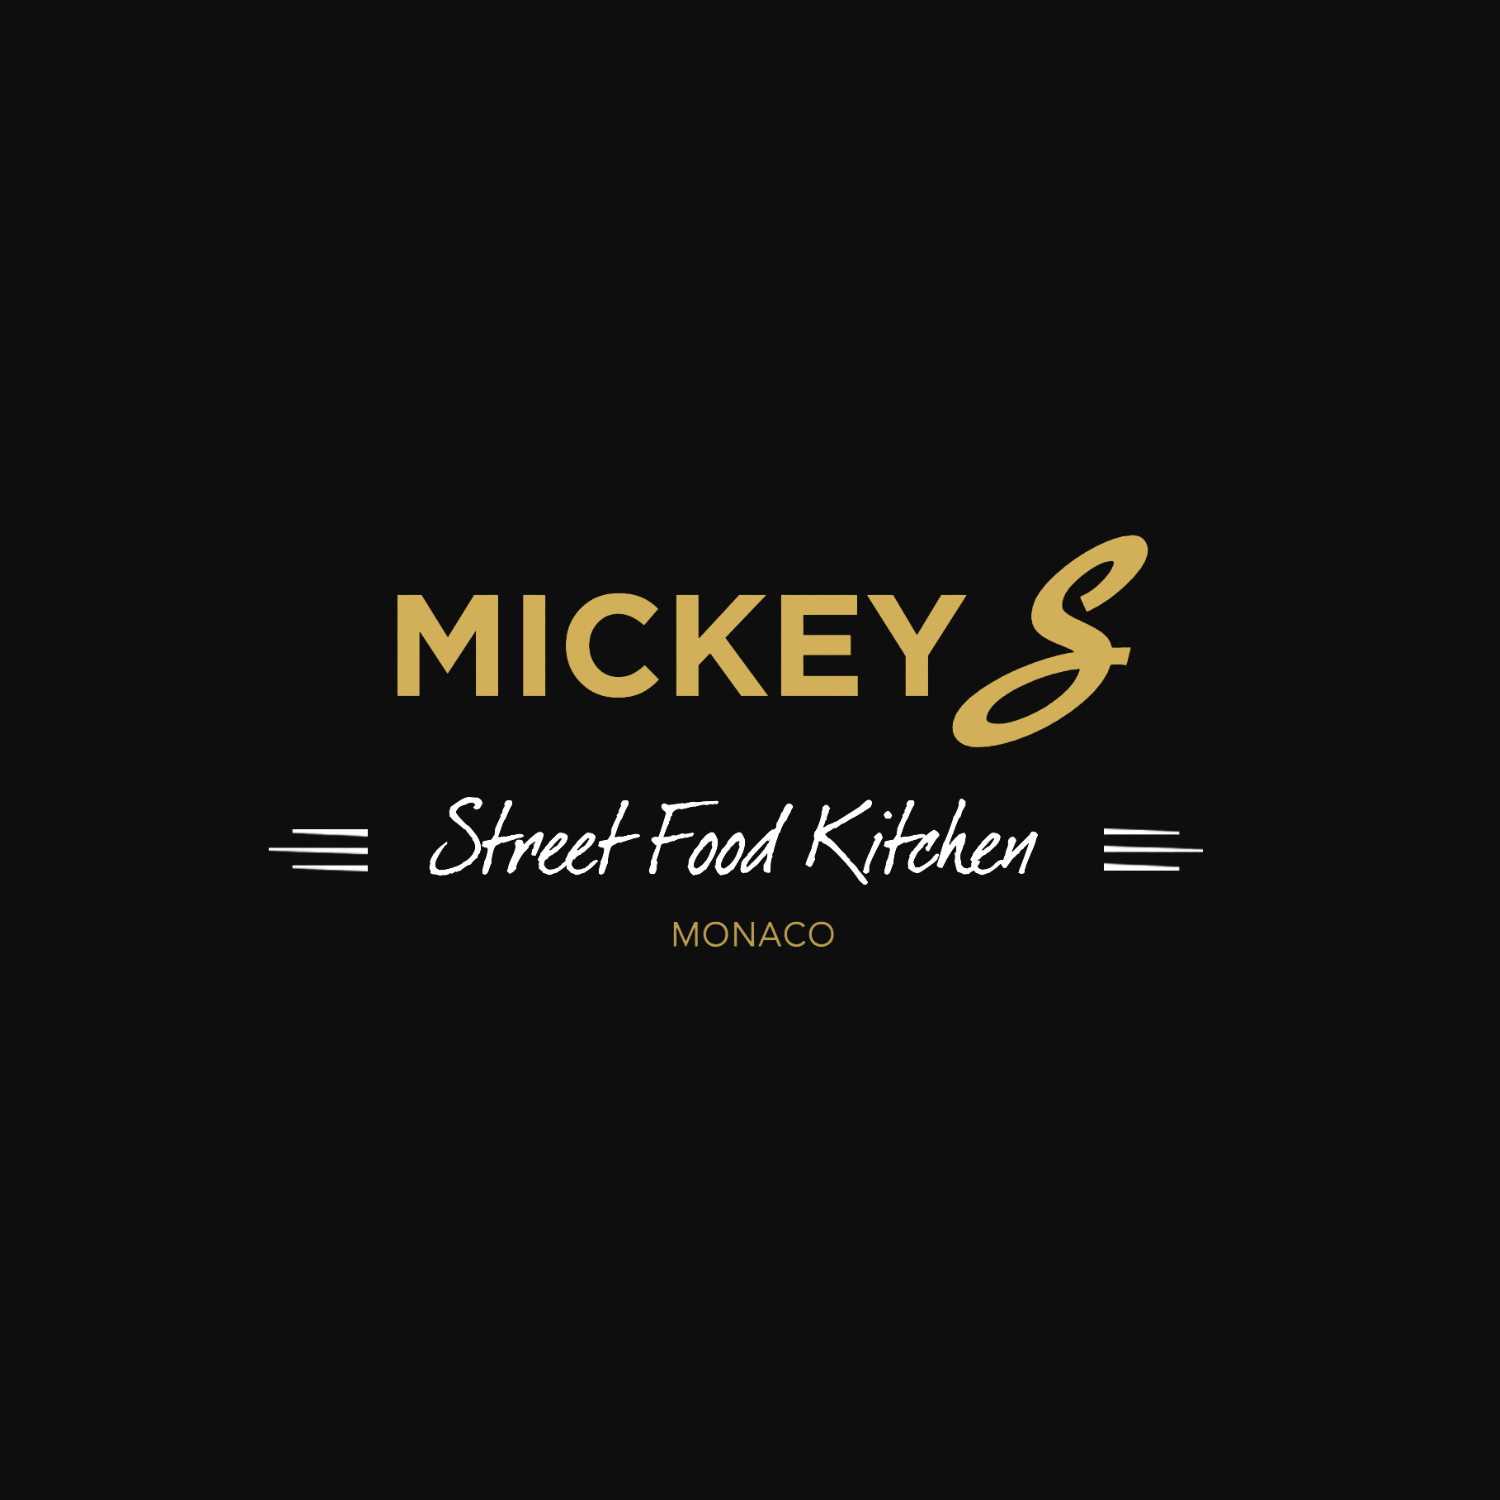 mickeys-pizza-monaco-carlo-app-comerciante-monaco-restaurante